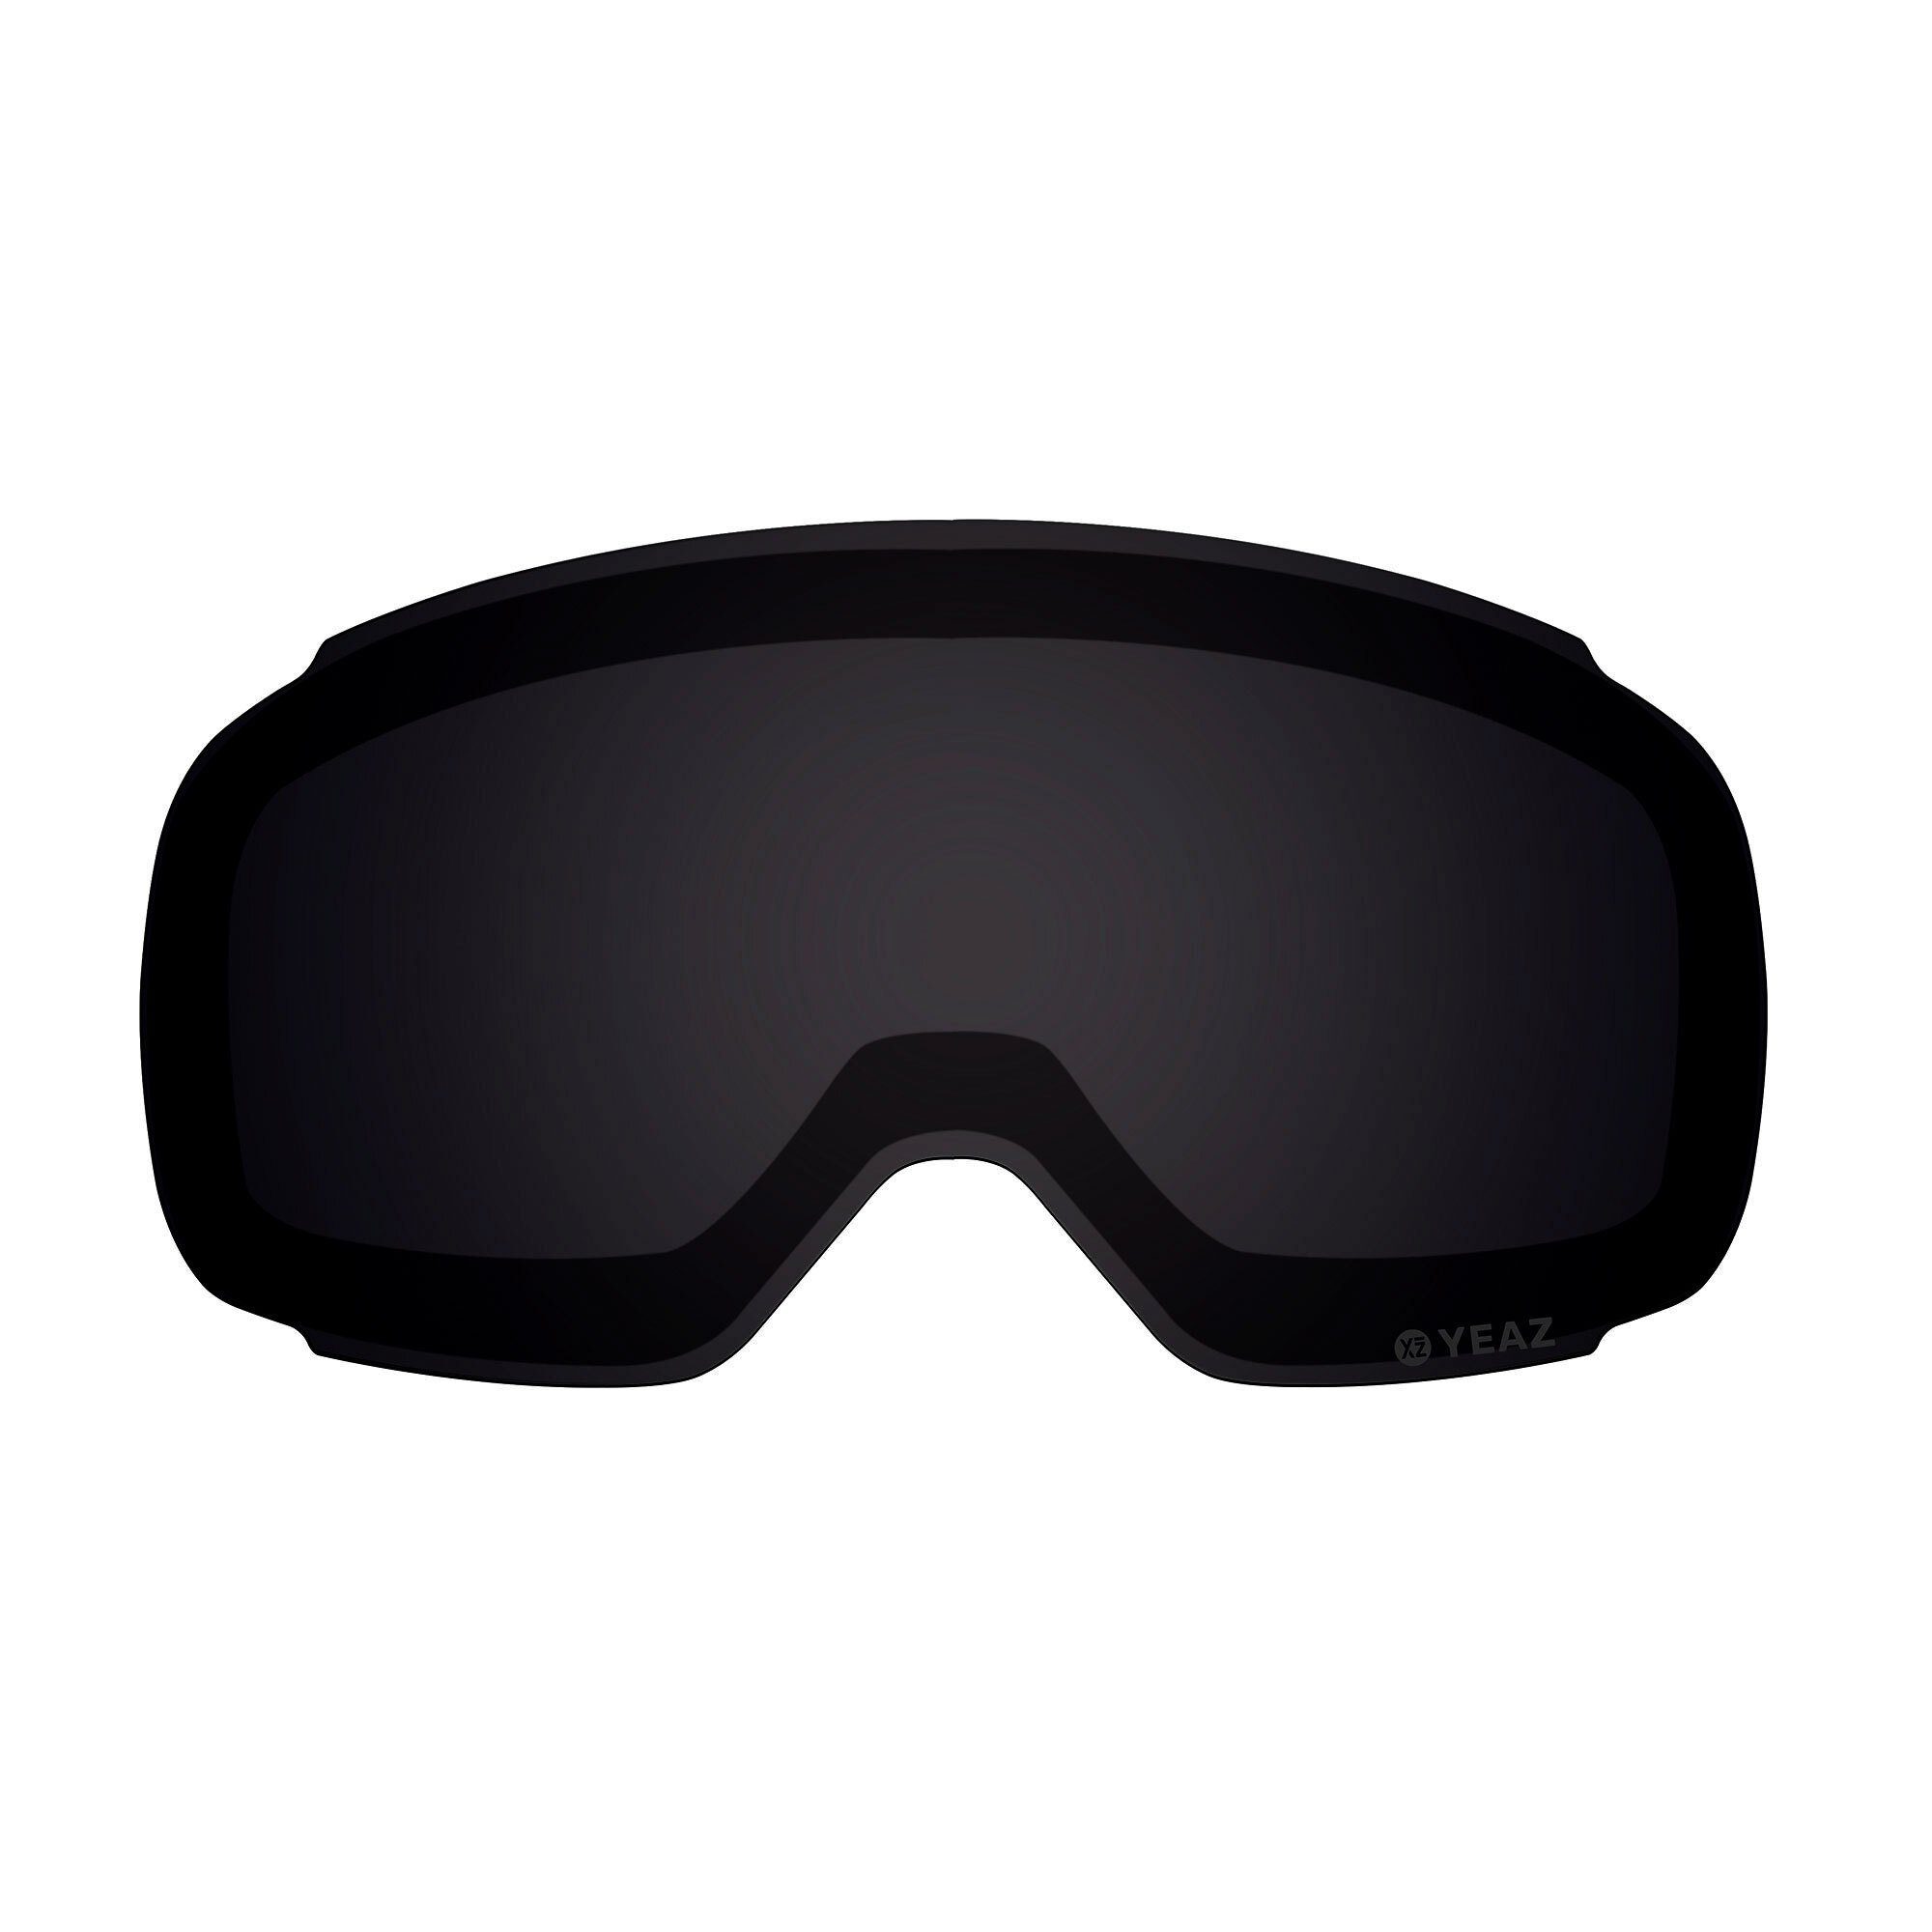 Magnetisches schwarz TWEAK-X wechselglas Wechselglas YEAZ für ski- Skibrille snowboardbrille,